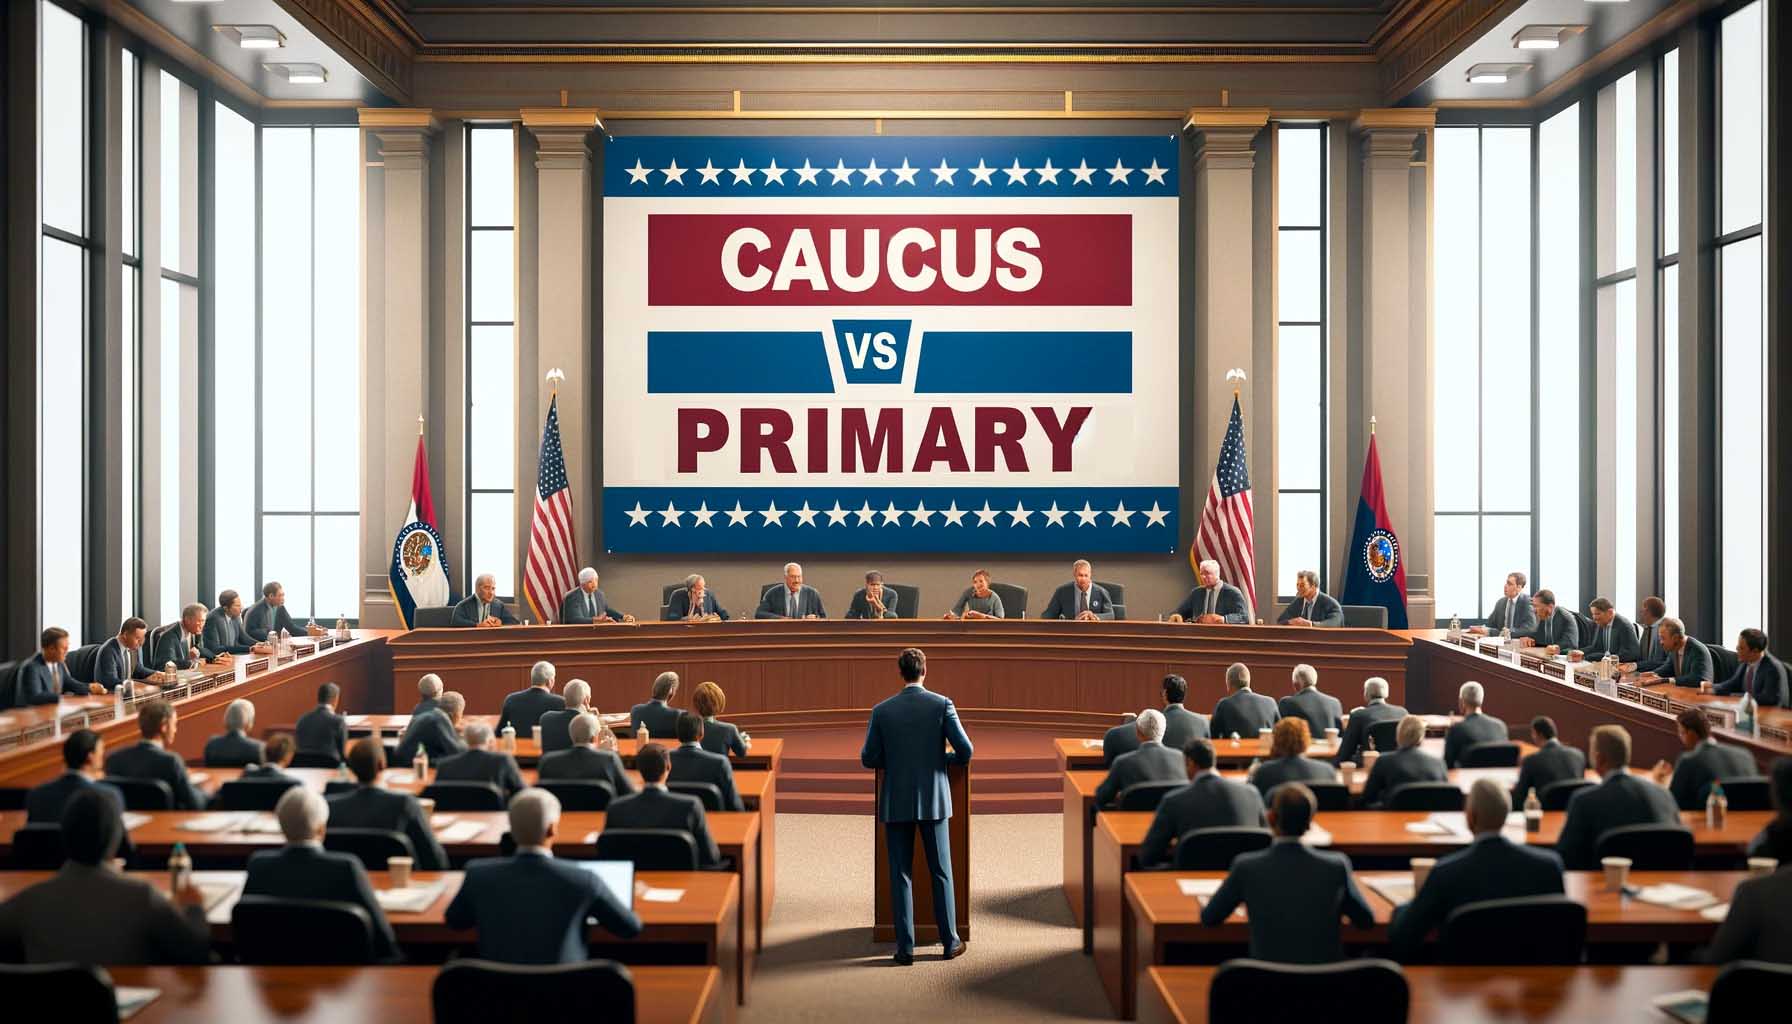 Caucus Versus Primary news graphic